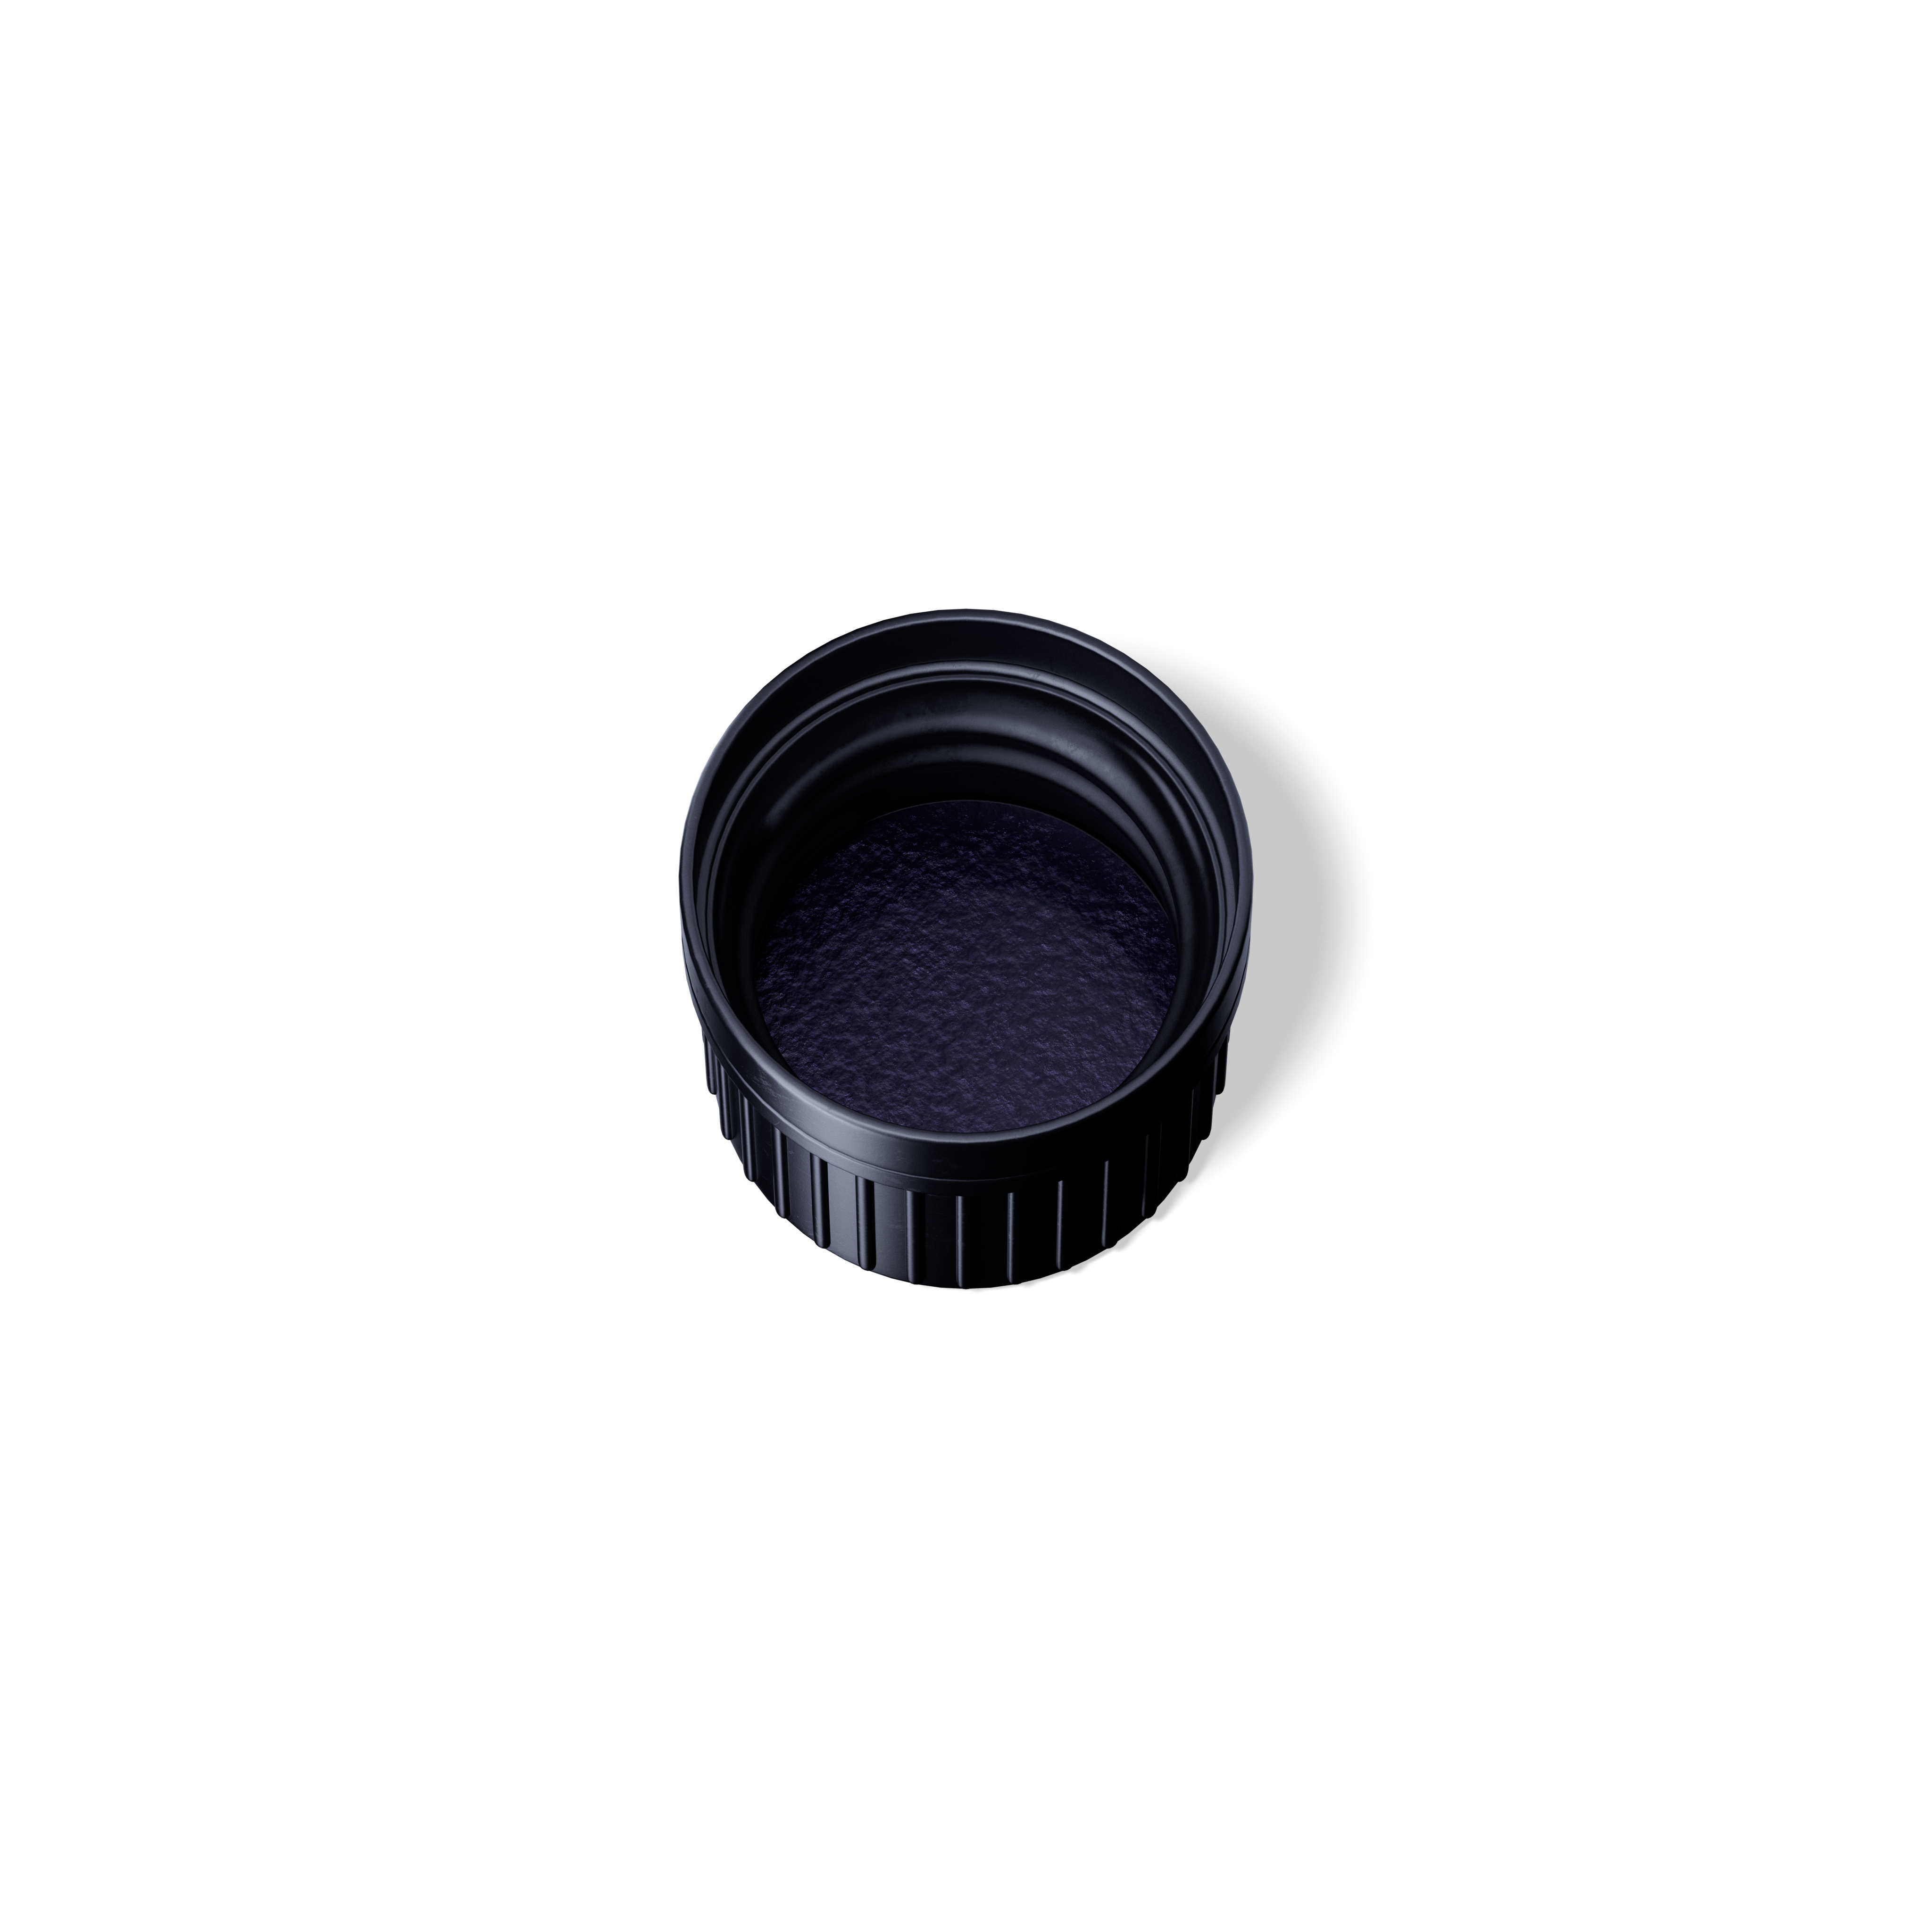 Screw cap tamper-evident DIN18, II, PEHD, black, violet Phan inlay (Orion)